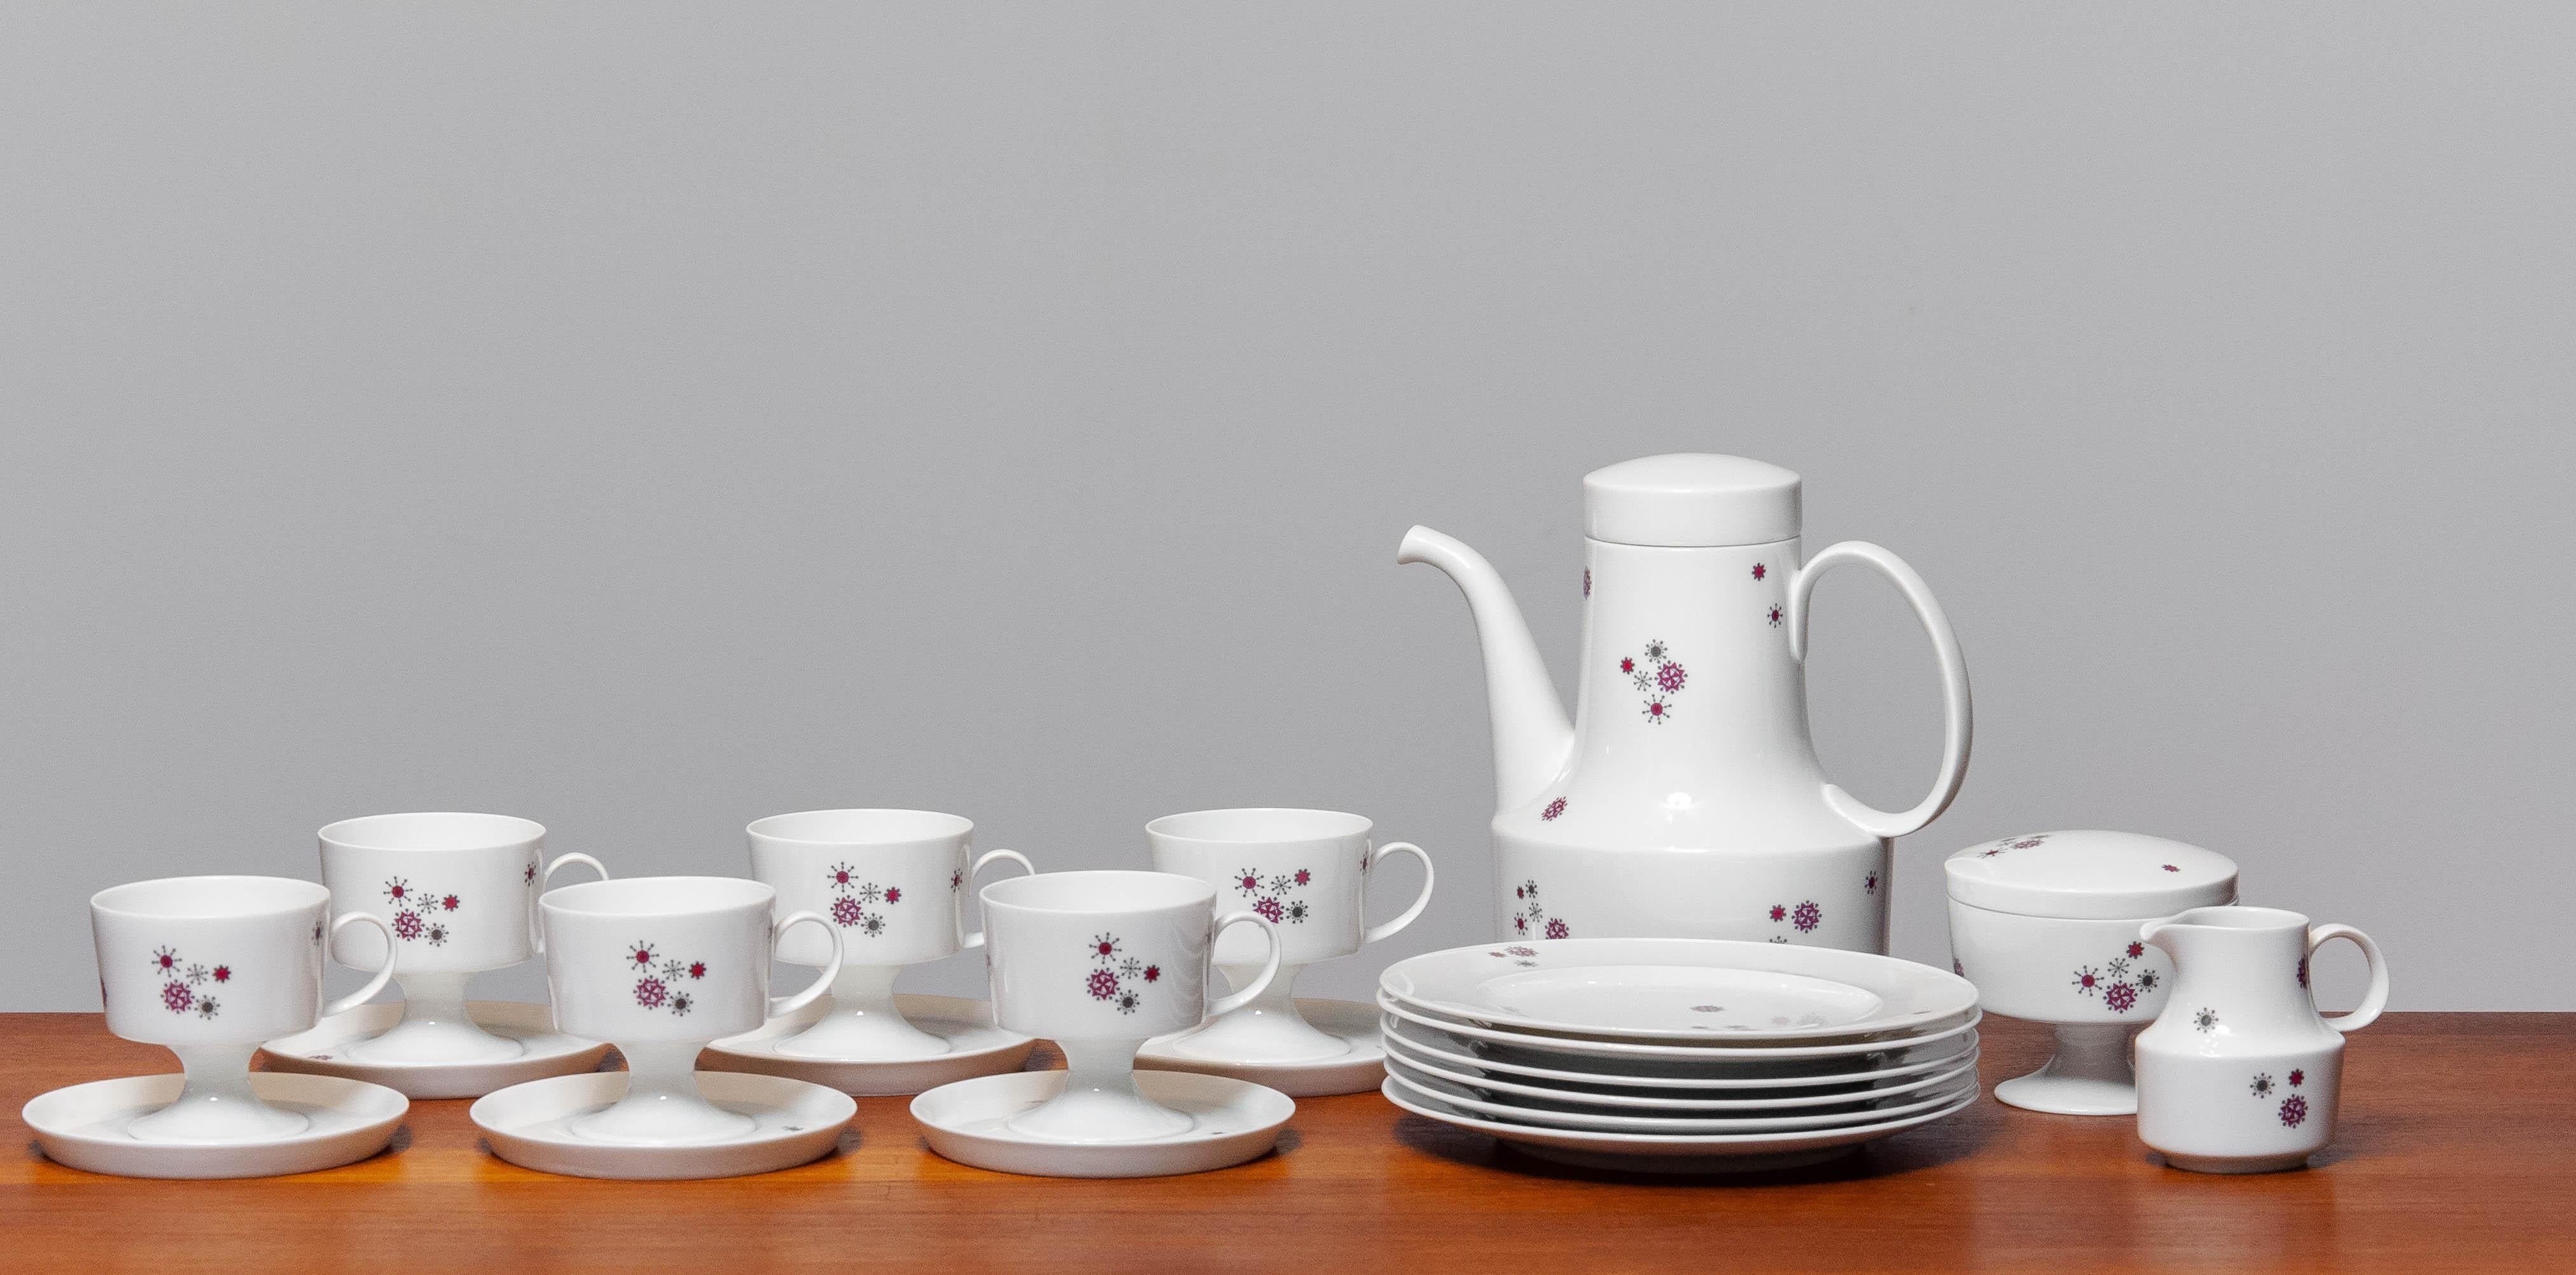 Wunderschönes Tee-/Kaffeeservice aus Porzellan aus der Serie 